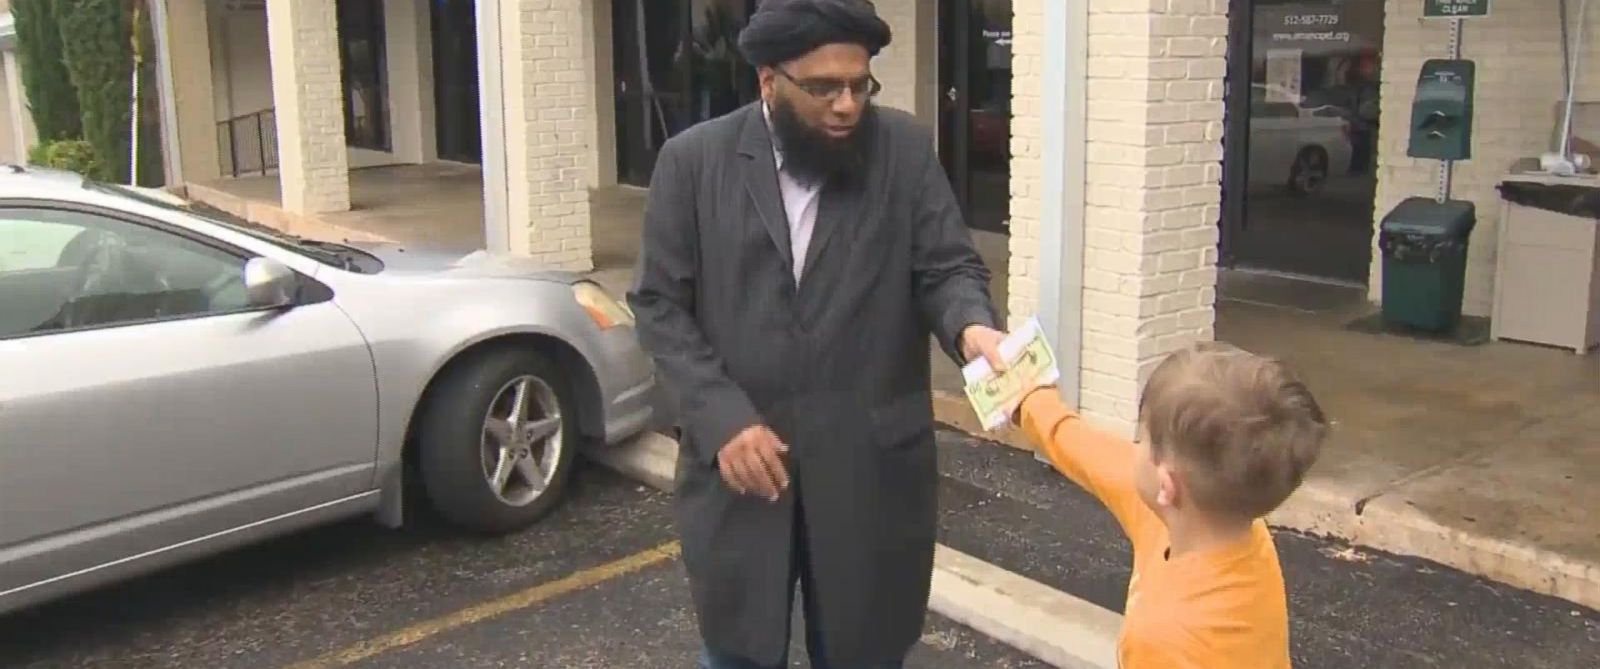 Este niño, se enteró de que una mezquita había sido atacada por vandalismo y él sin pensárselo donó todos sus ahorros (Nada más y nada menos que 20$ para comprarse una tablet). Es un gesto fenomenal!